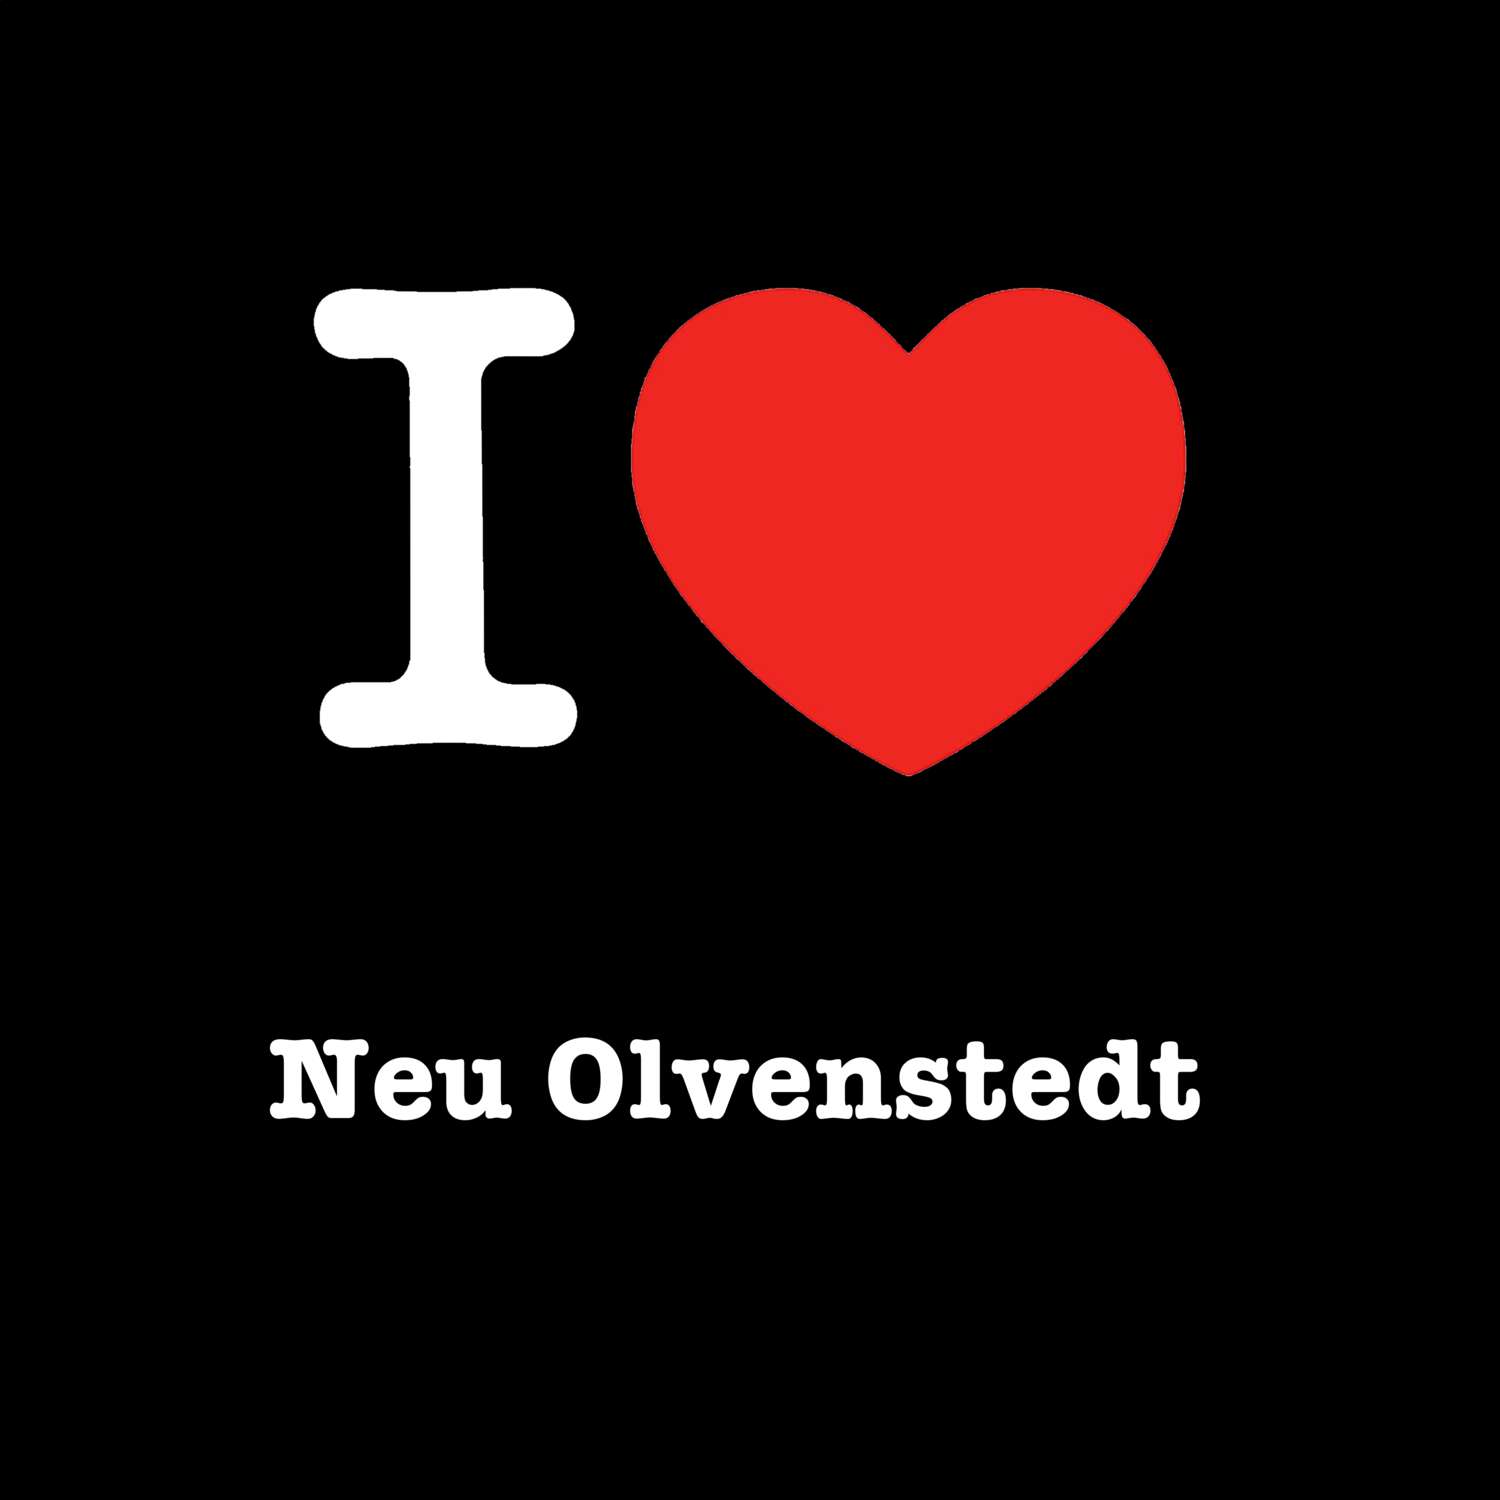 Neu Olvenstedt T-Shirt »I love«